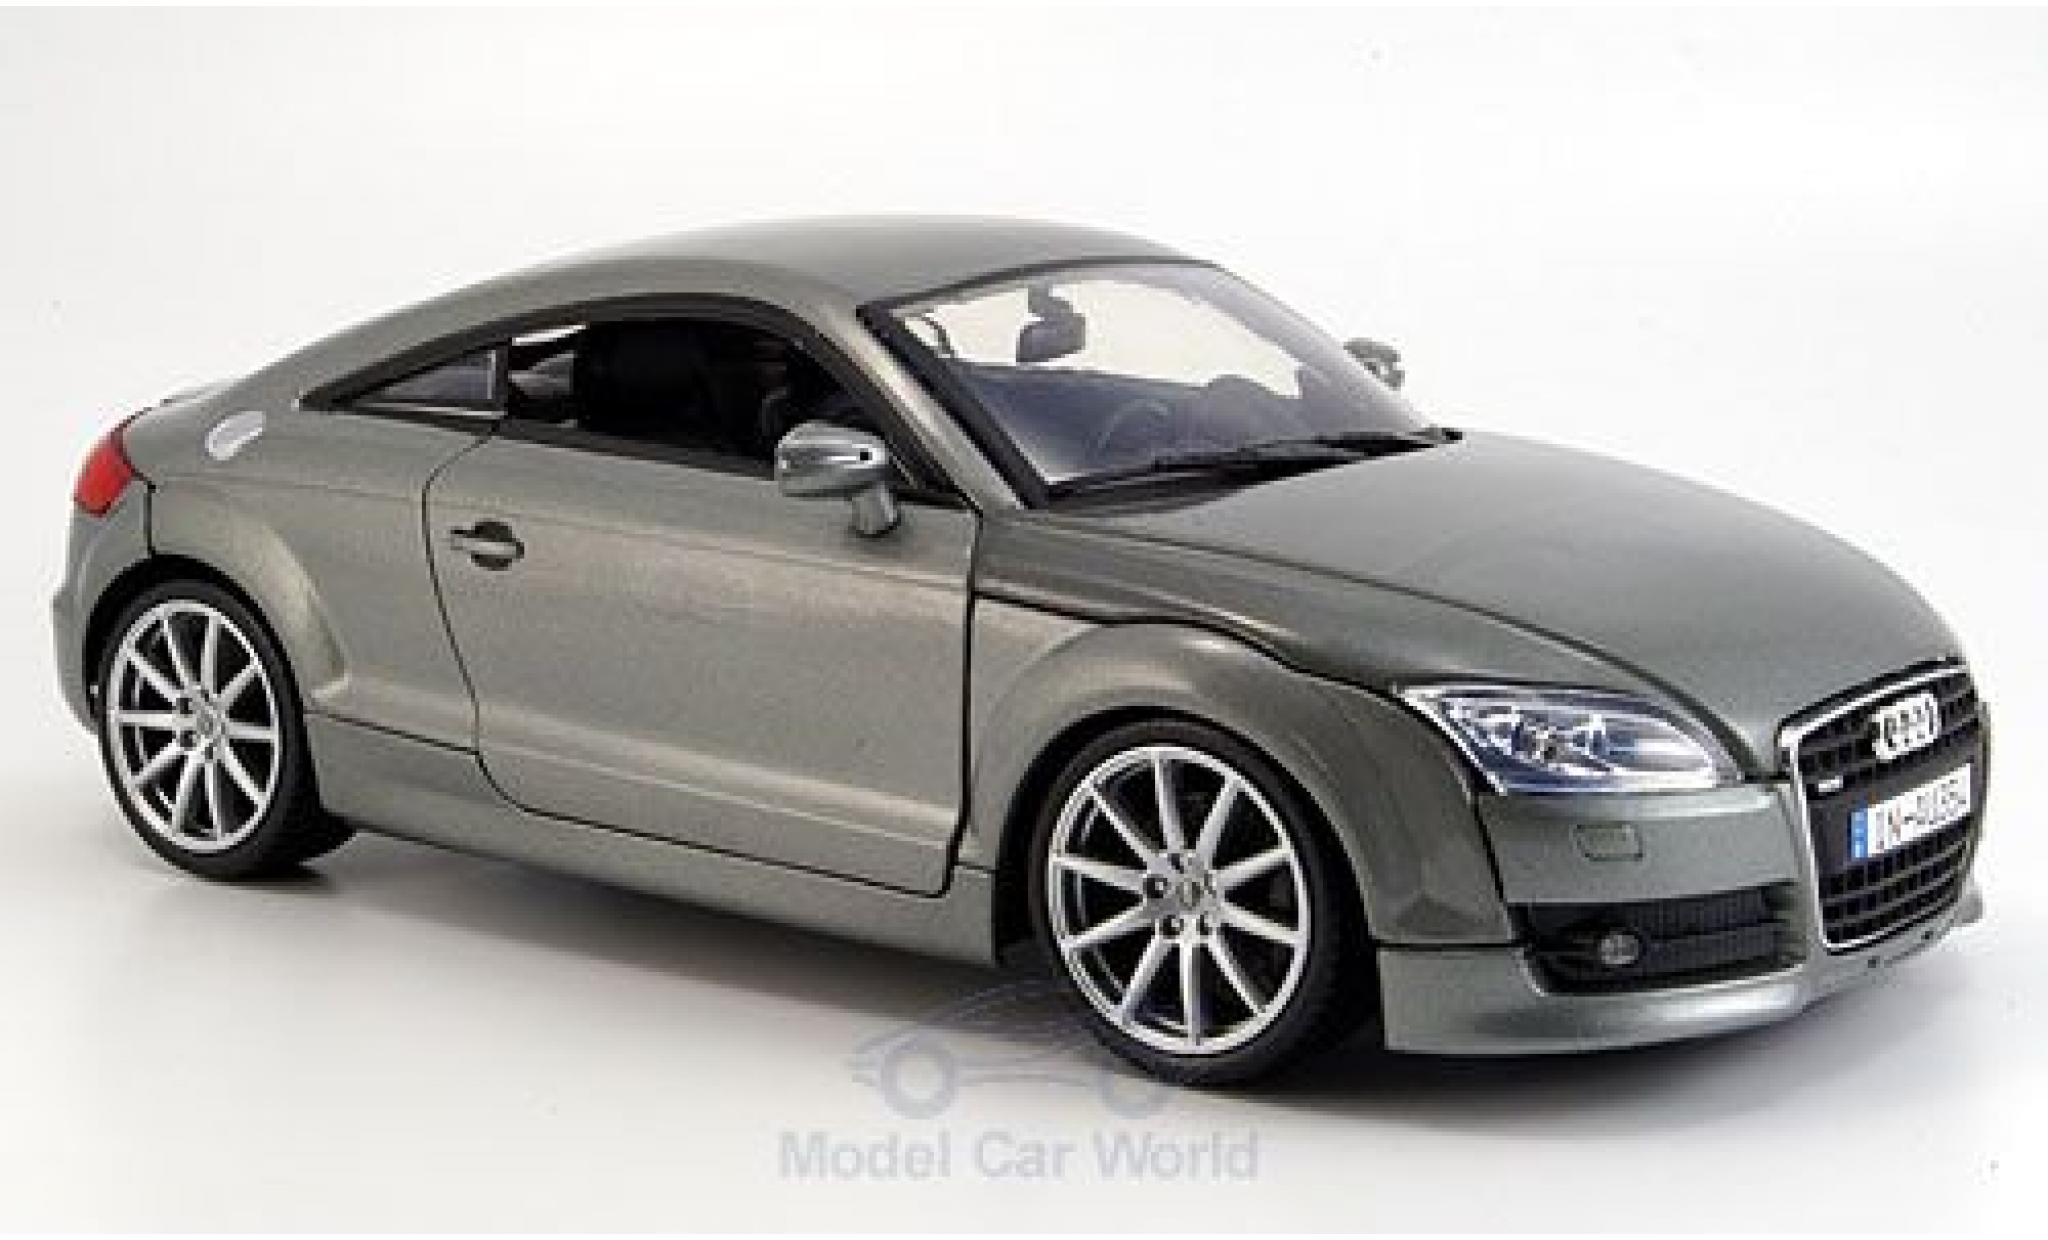 Audi TT Coupe voiture miniature Motormax 1:18 metallic-gris Miniature d/éj/à mont/ée 2007